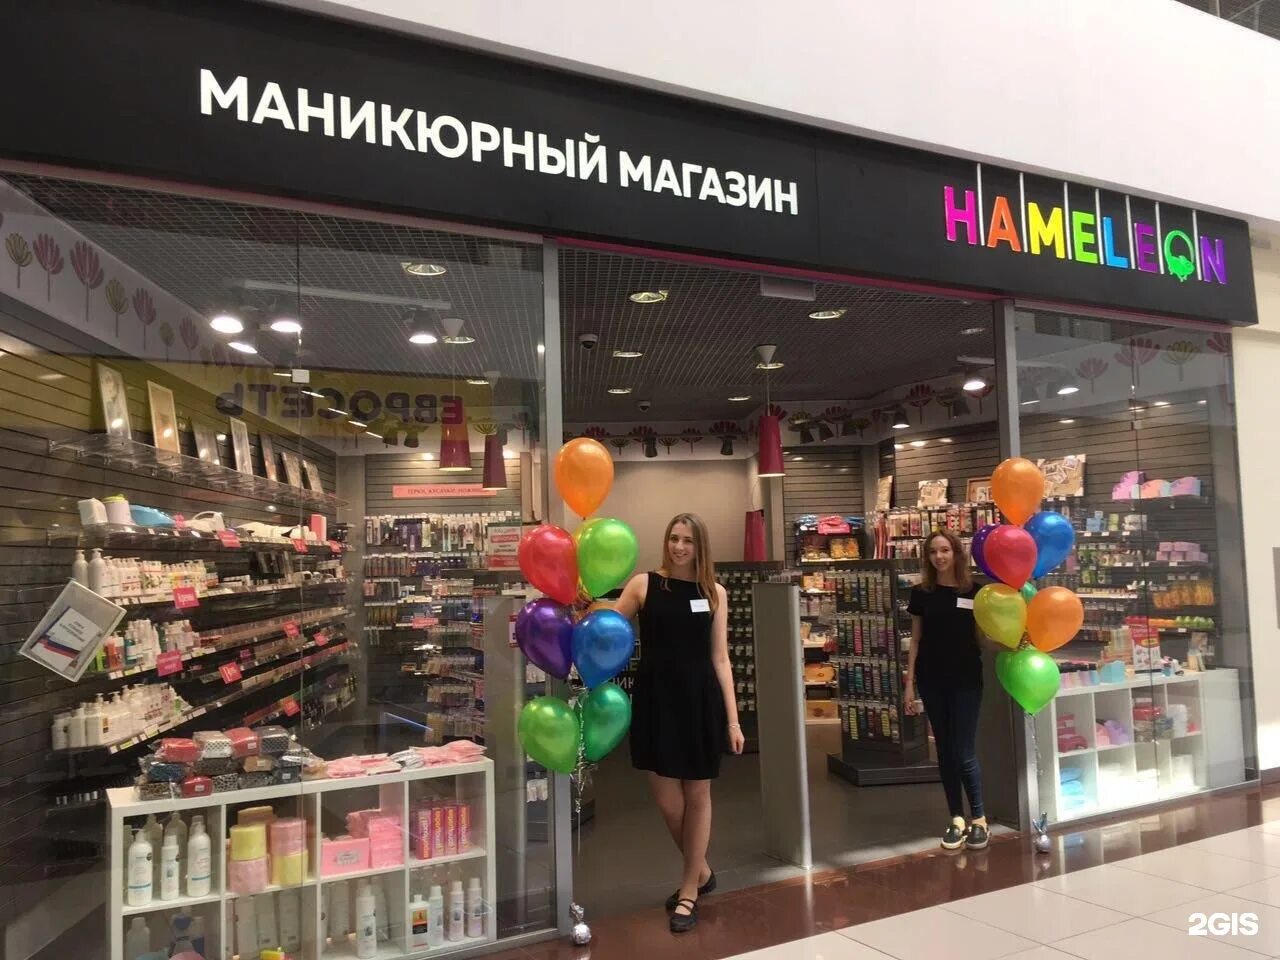 Хамелеон магазин новосибирск. Хамелеон магазин. Хамелеон маникюрный магазин. Хамелеон Уфа магазин. Хамелеон магазин для ногтей Новосибирск.